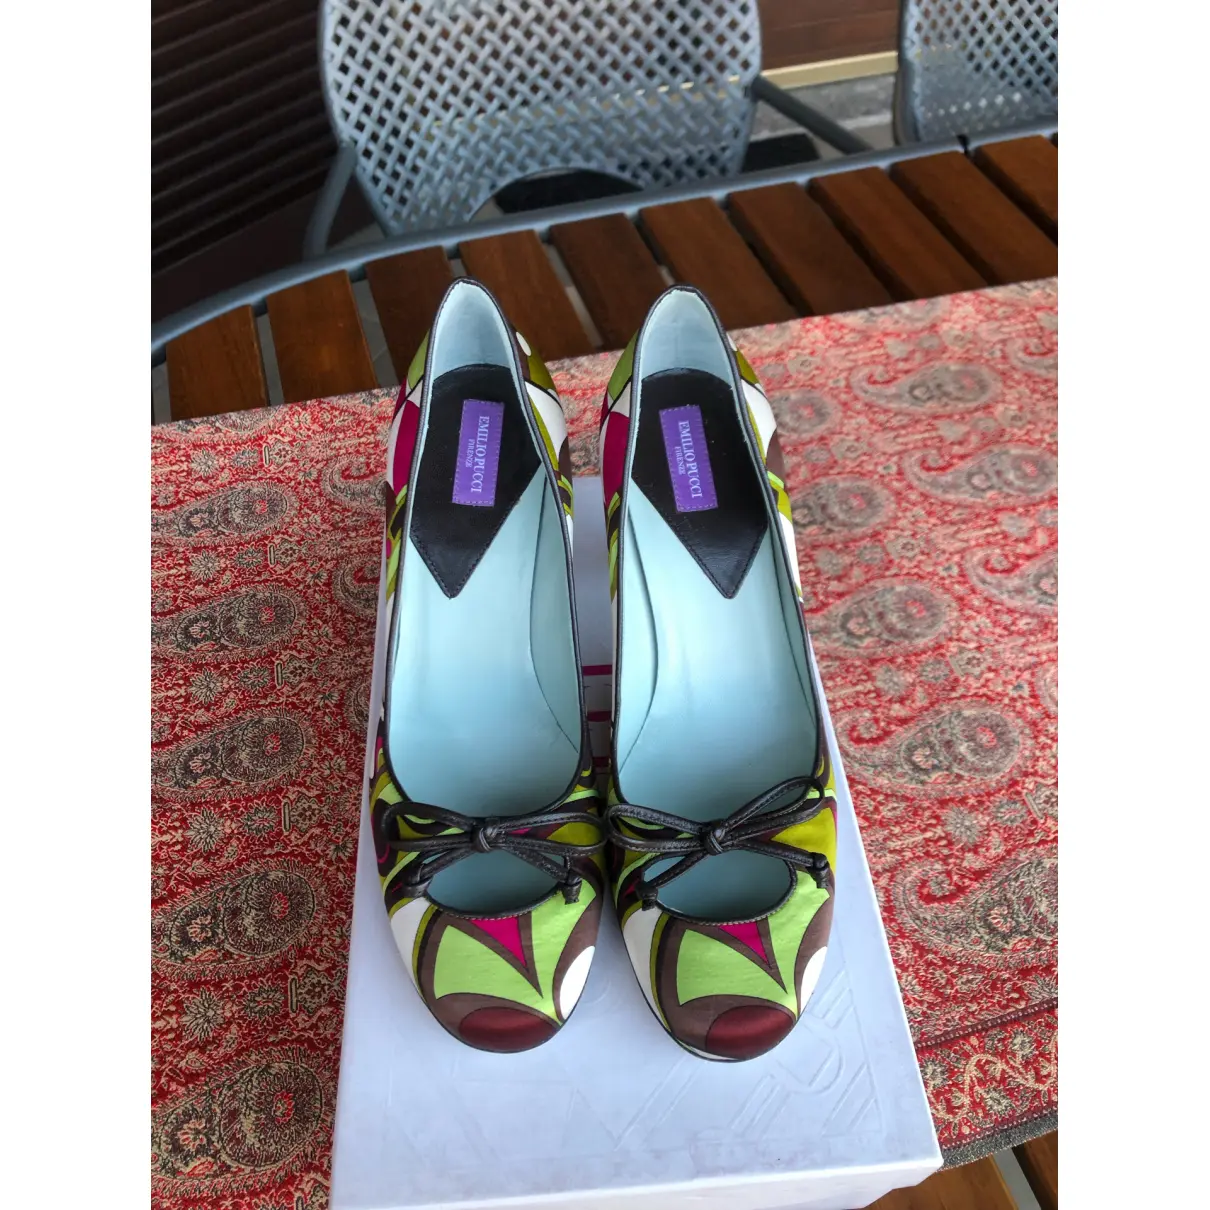 Buy Emilio Pucci Cloth heels online